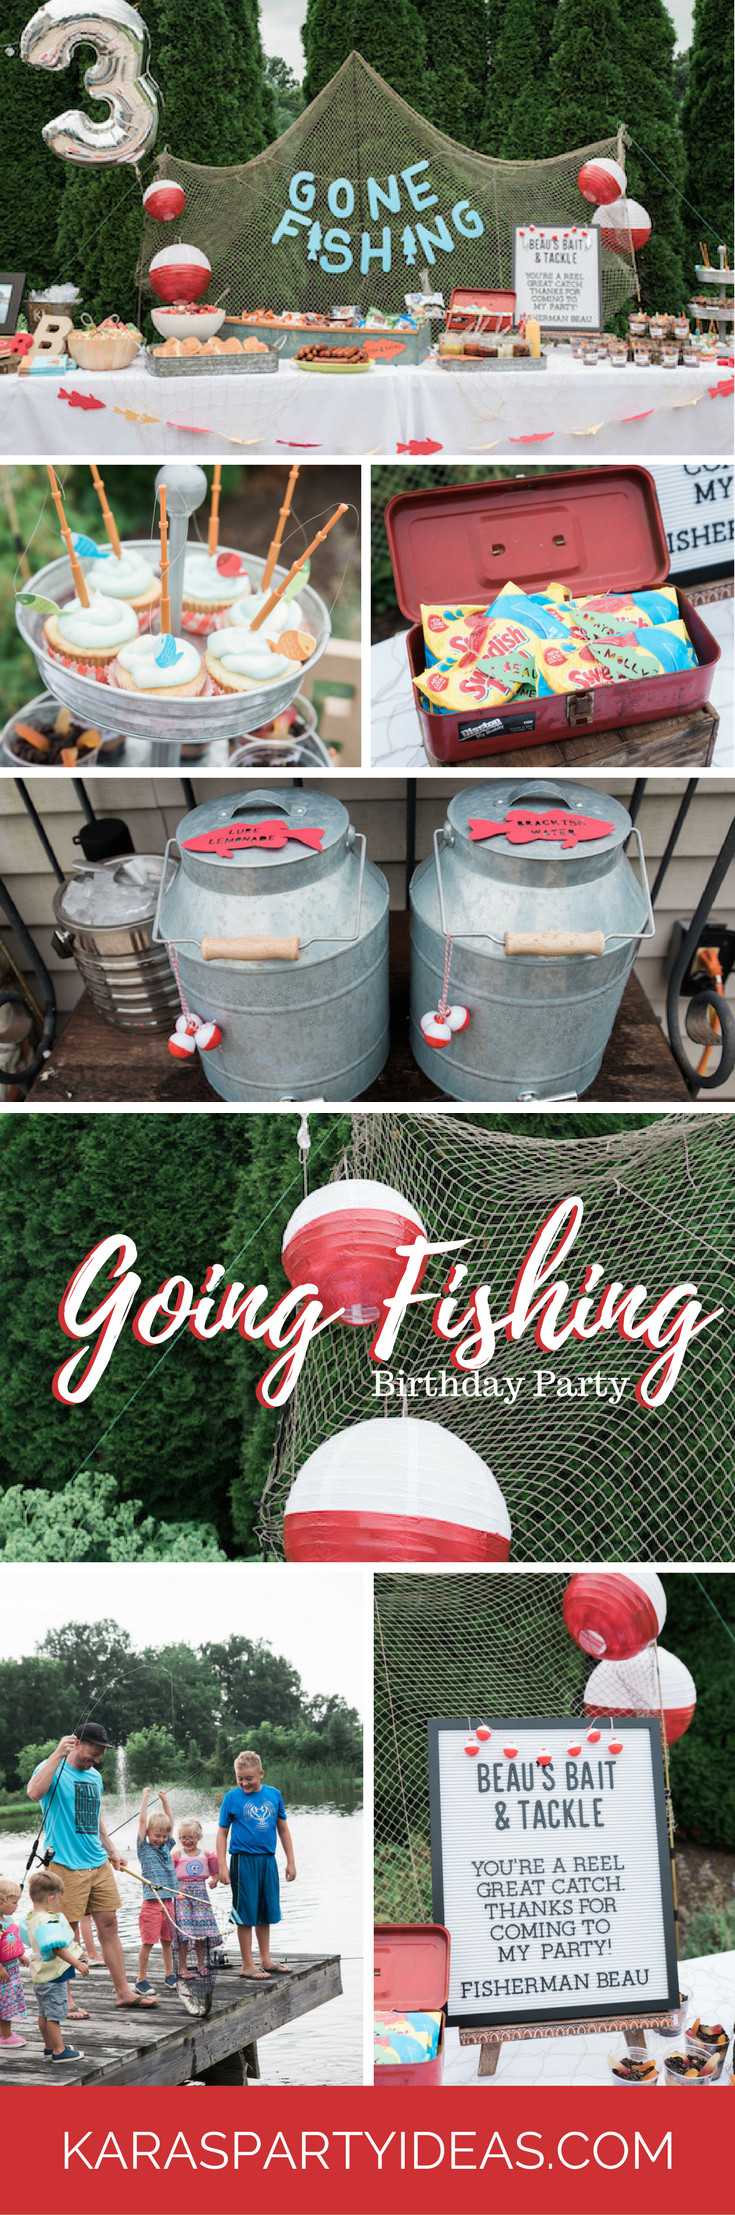 Fishing Birthday Party Ideas
 Kara s Party Ideas Gone Fishing Birthday Party